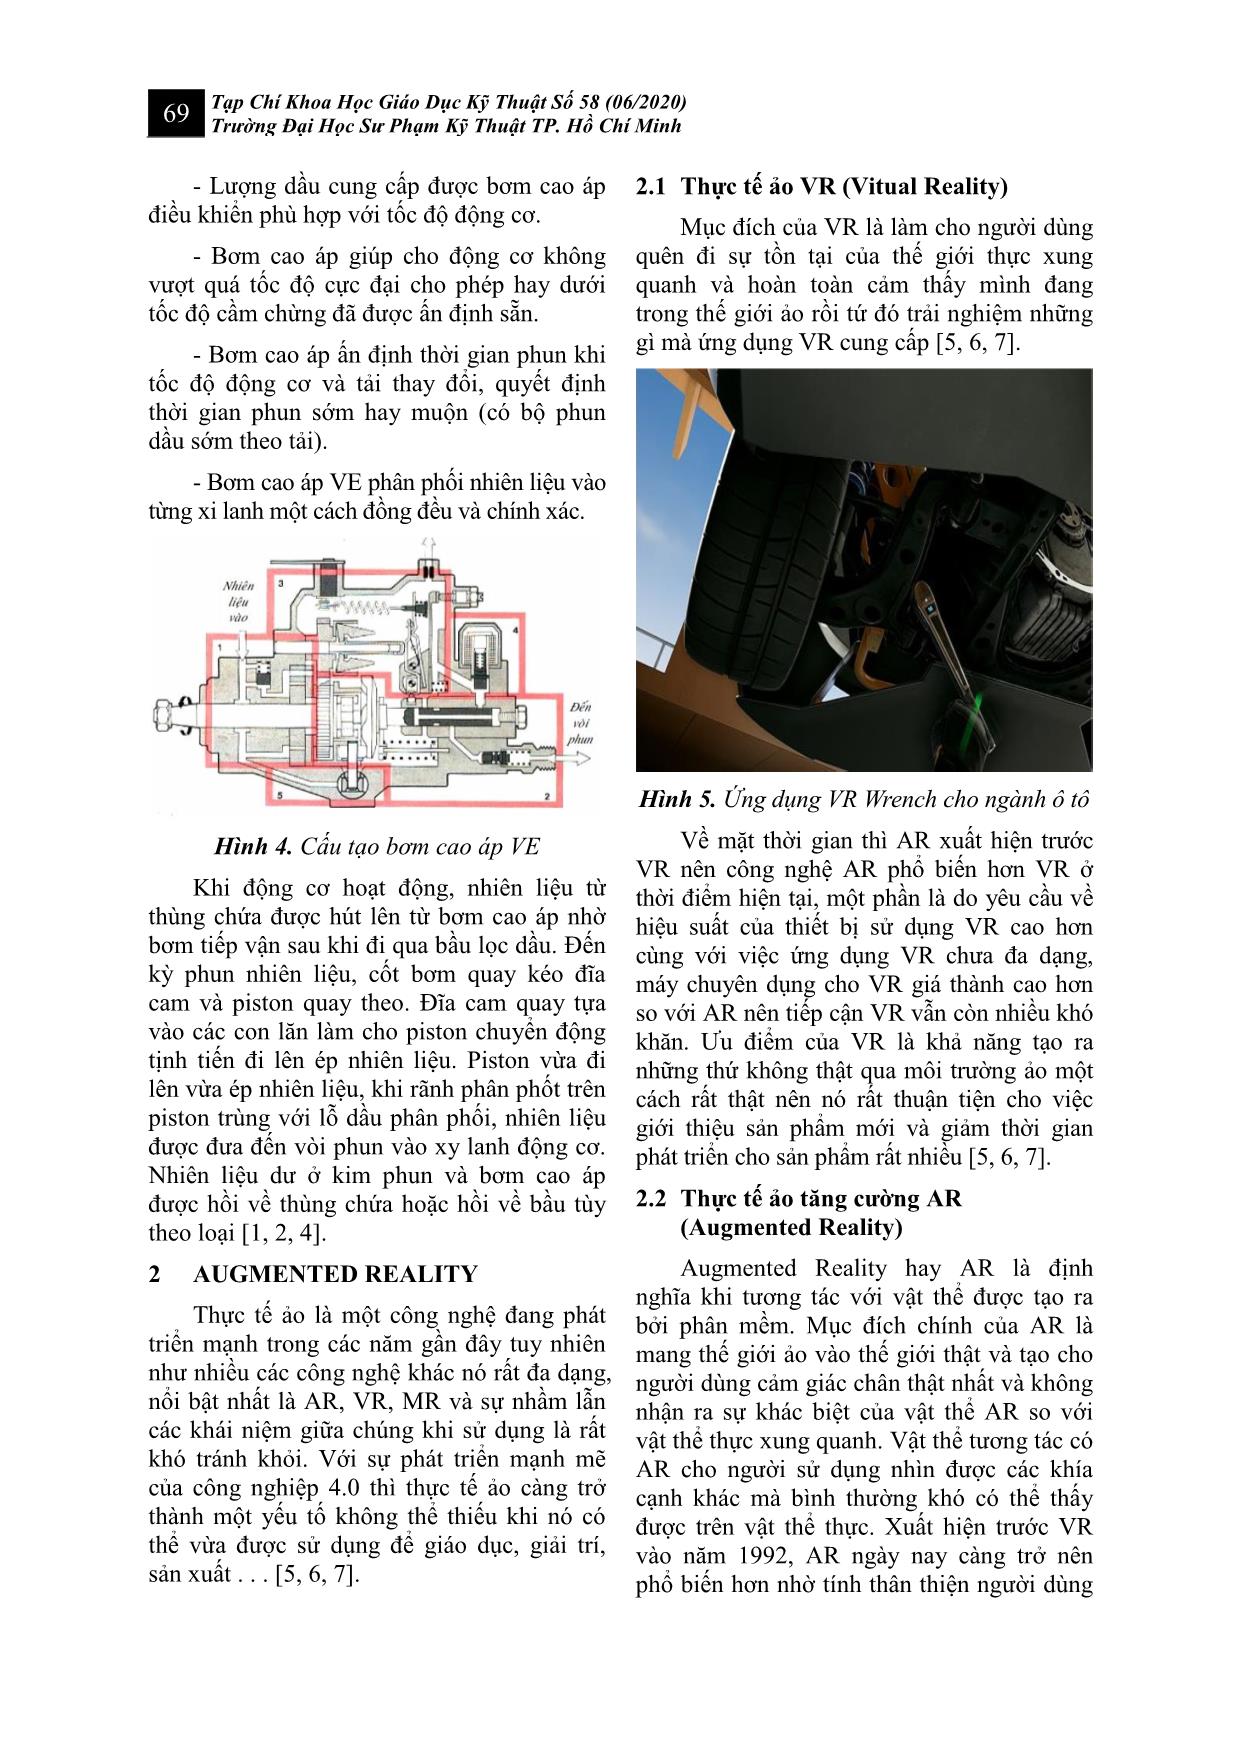 Ứng dụng Augmented Reality trong việc giảng dạy và học tập bơm cao áp Diesel trang 3